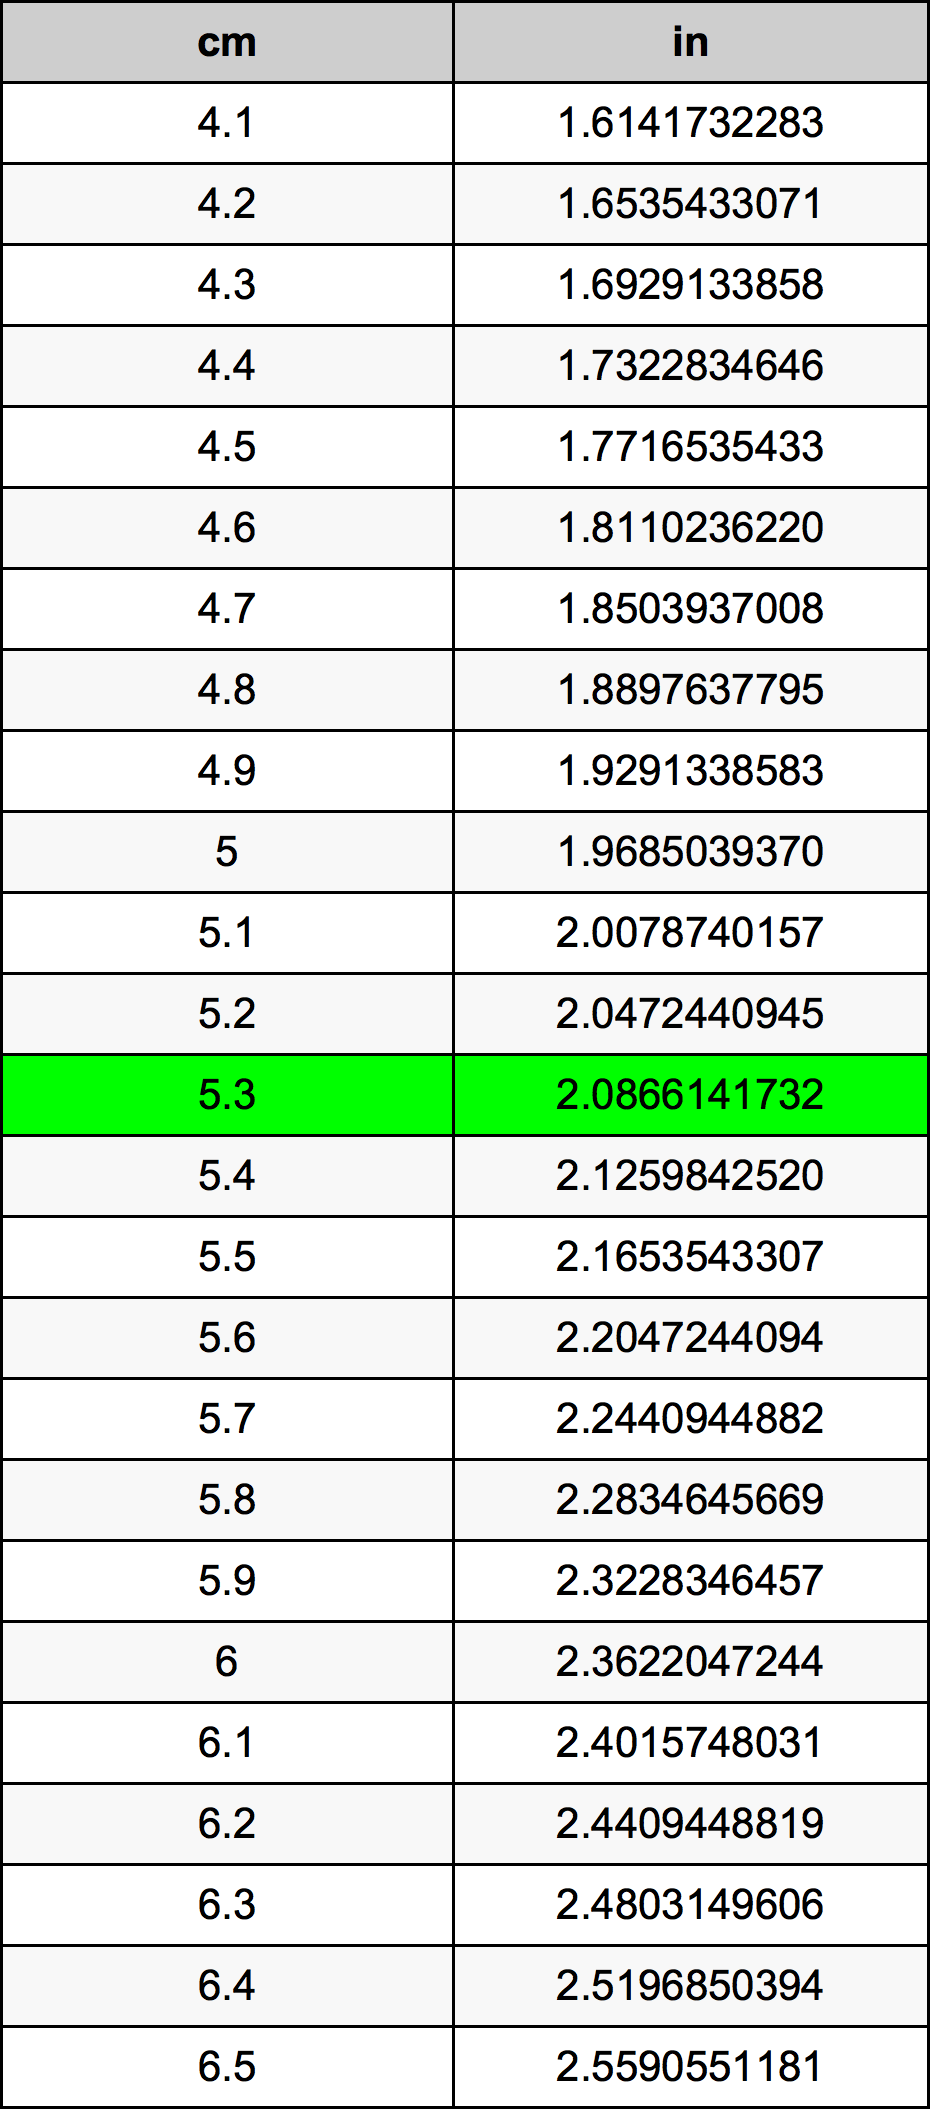 5.3 Centiméter átszámítási táblázat